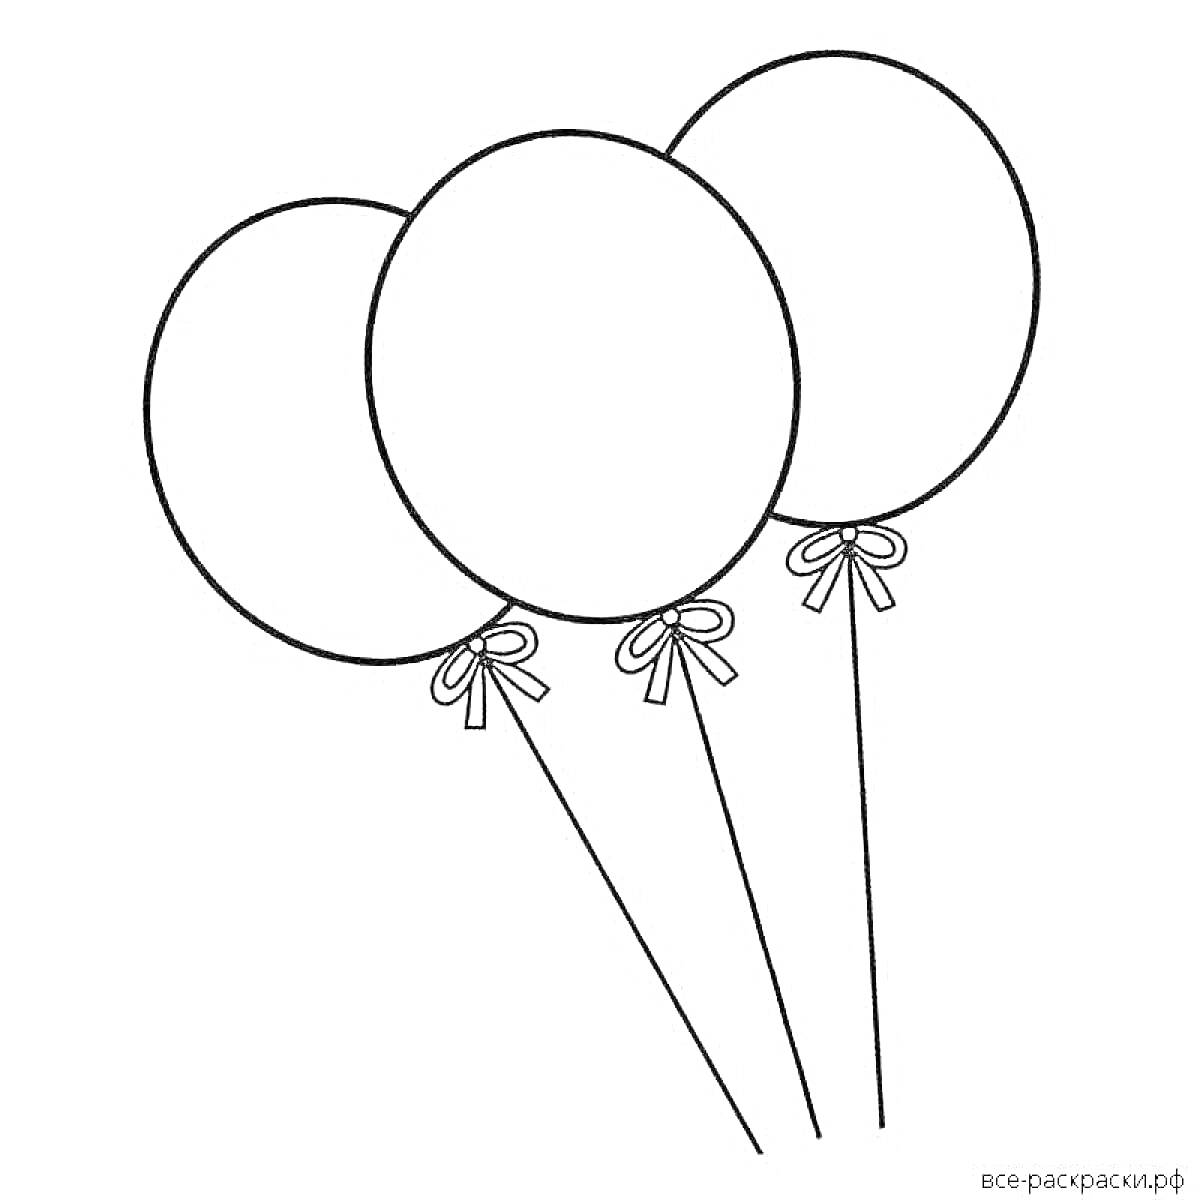 Раскраска Три воздушных шарика с ленточками